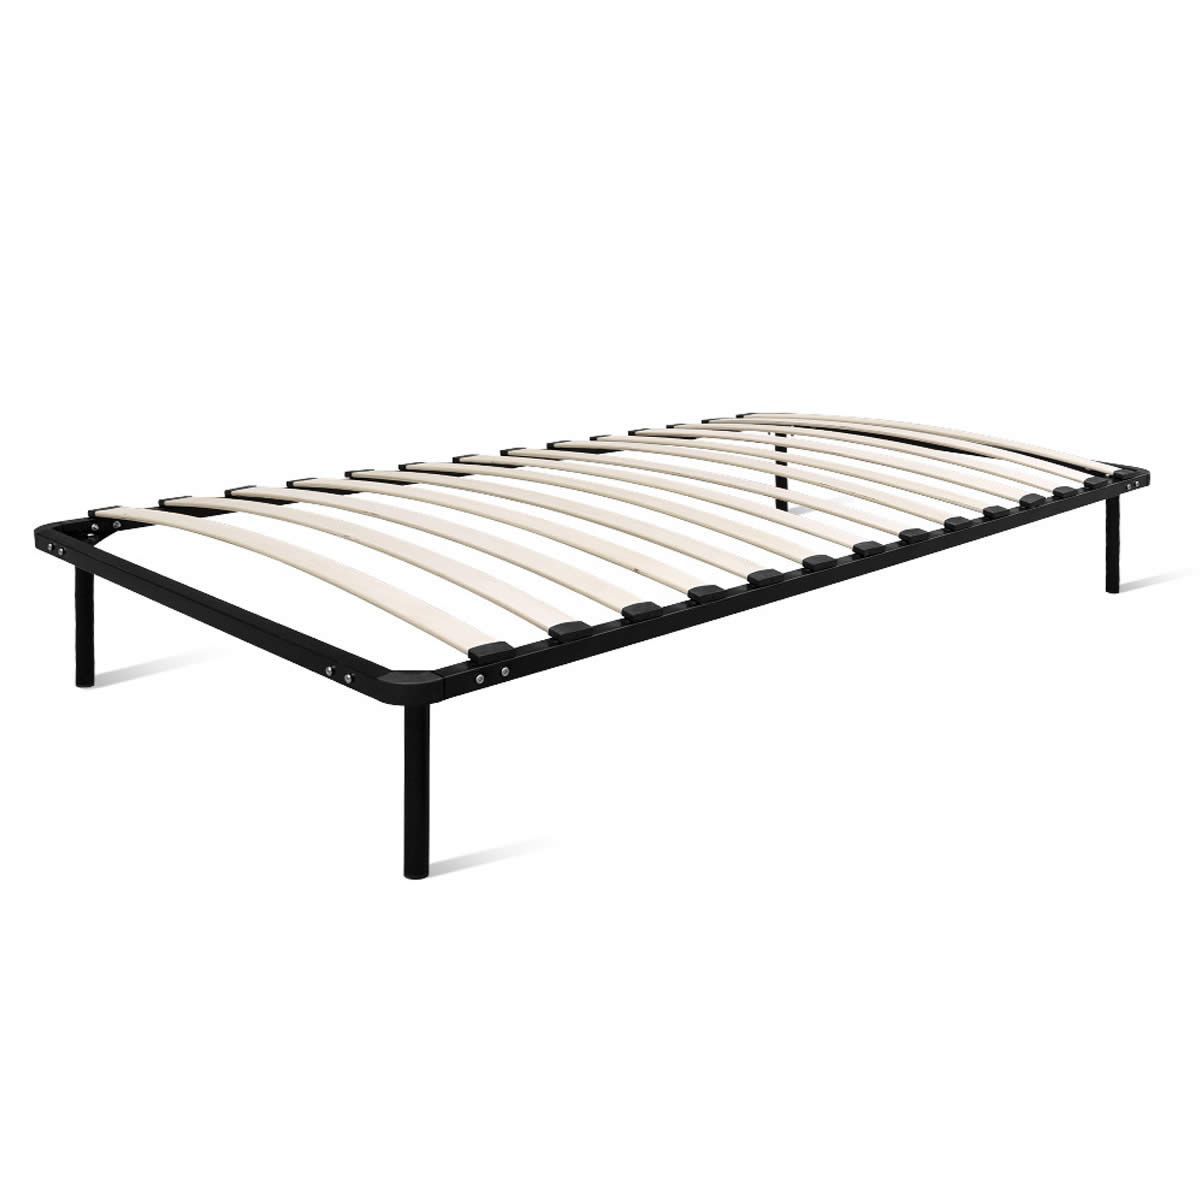 King Single Size Metal Bed Frame - Black